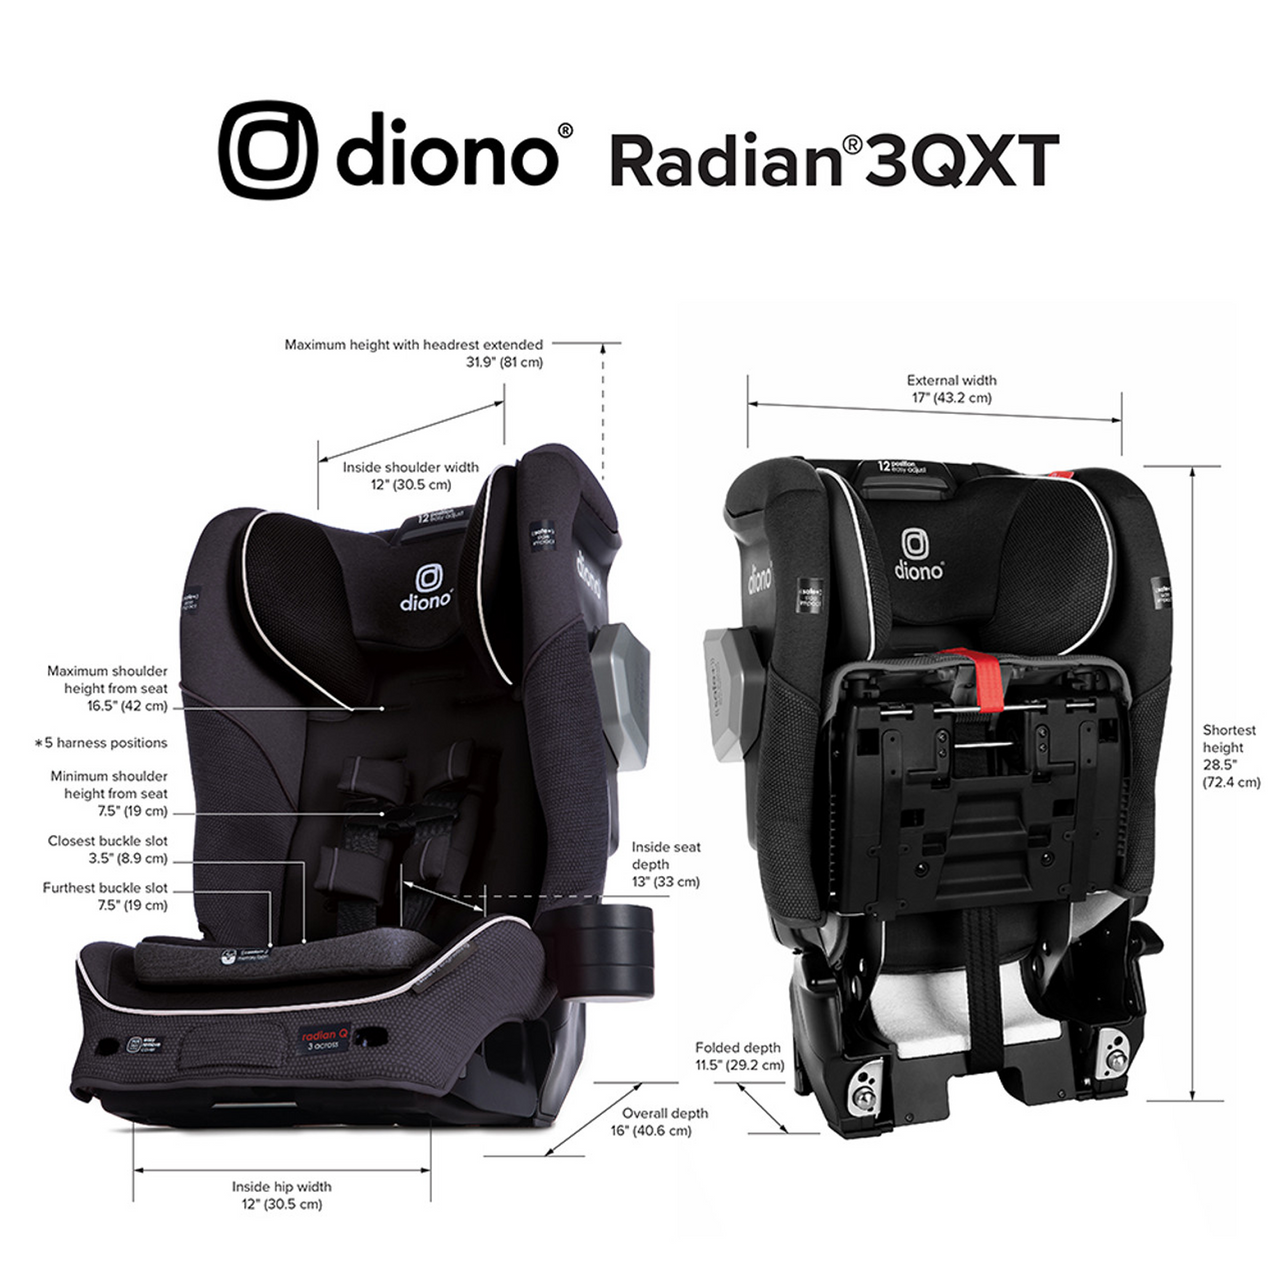 DIONO Radian 3QXT